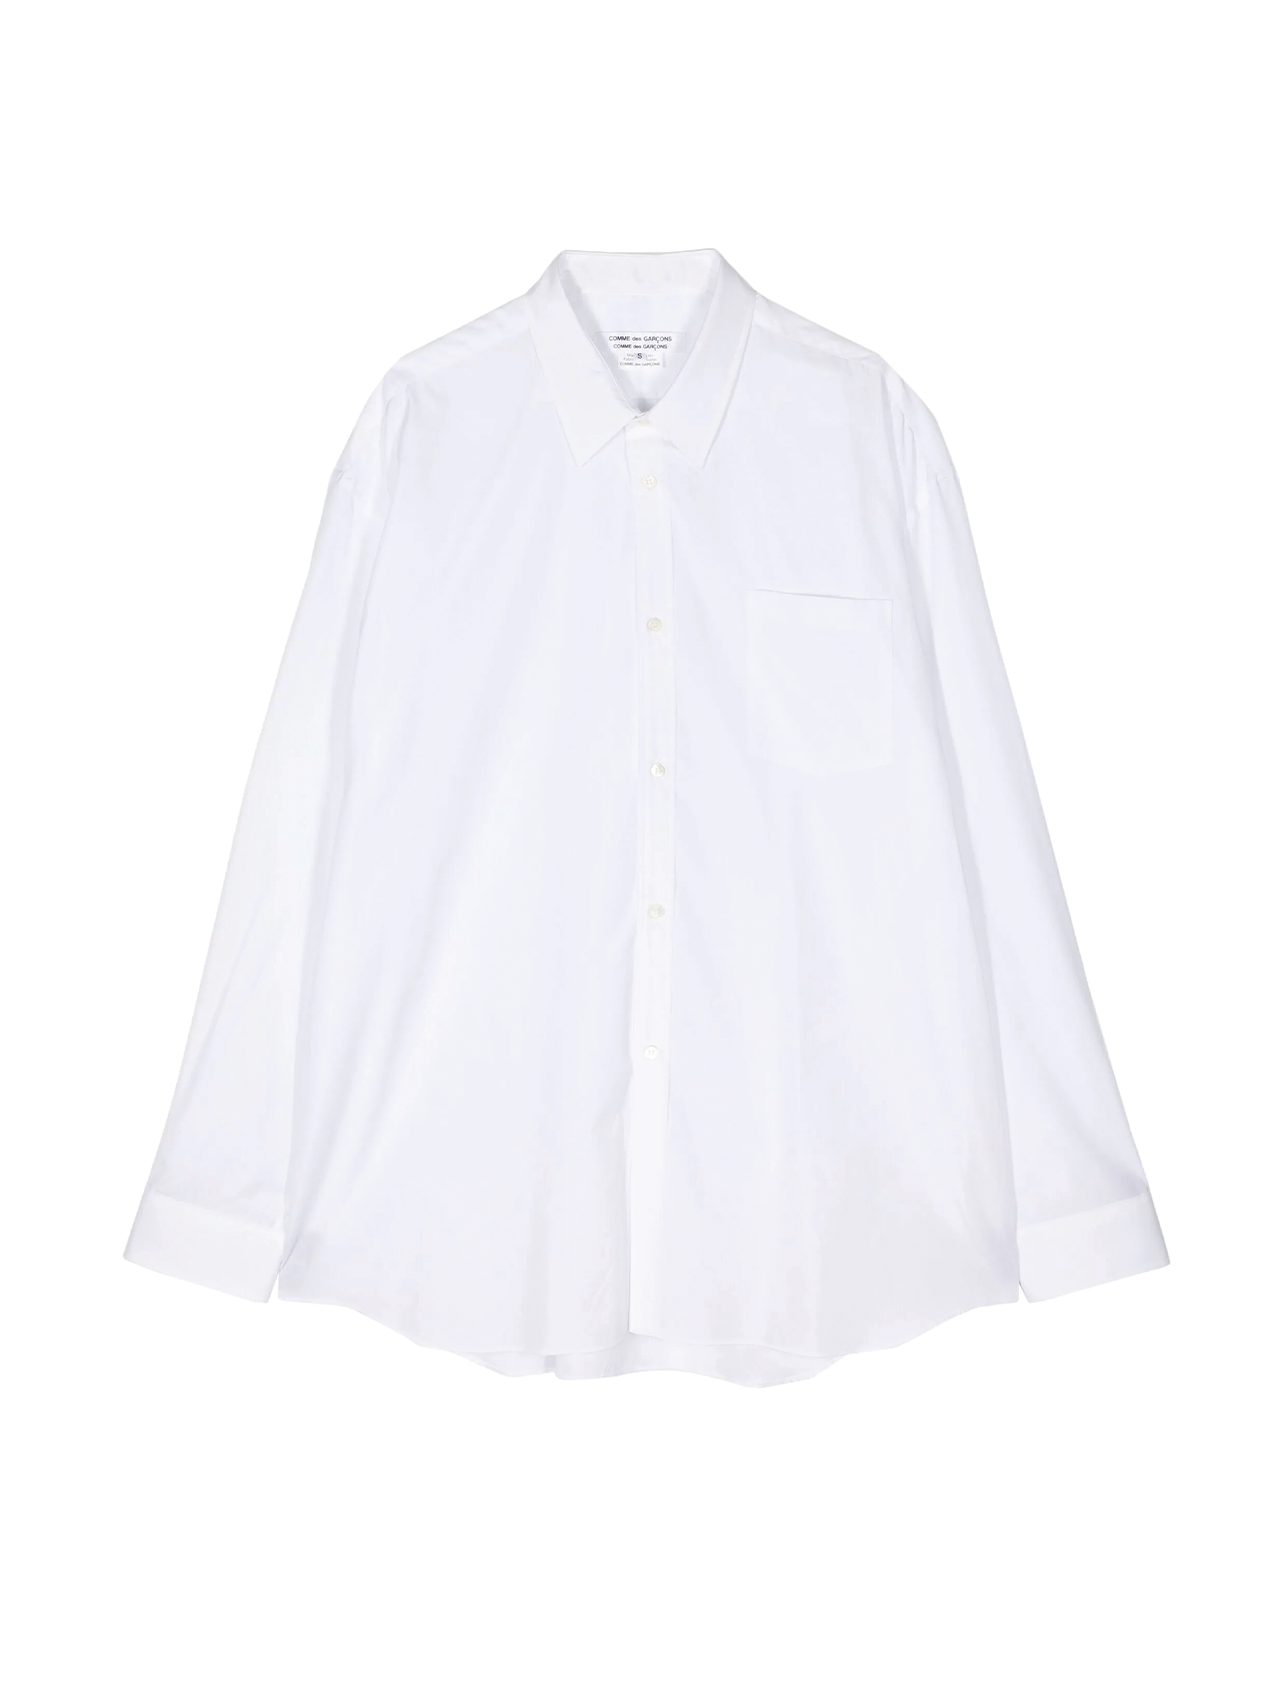 CDG CDG White Loose Fit Cotton Shirt